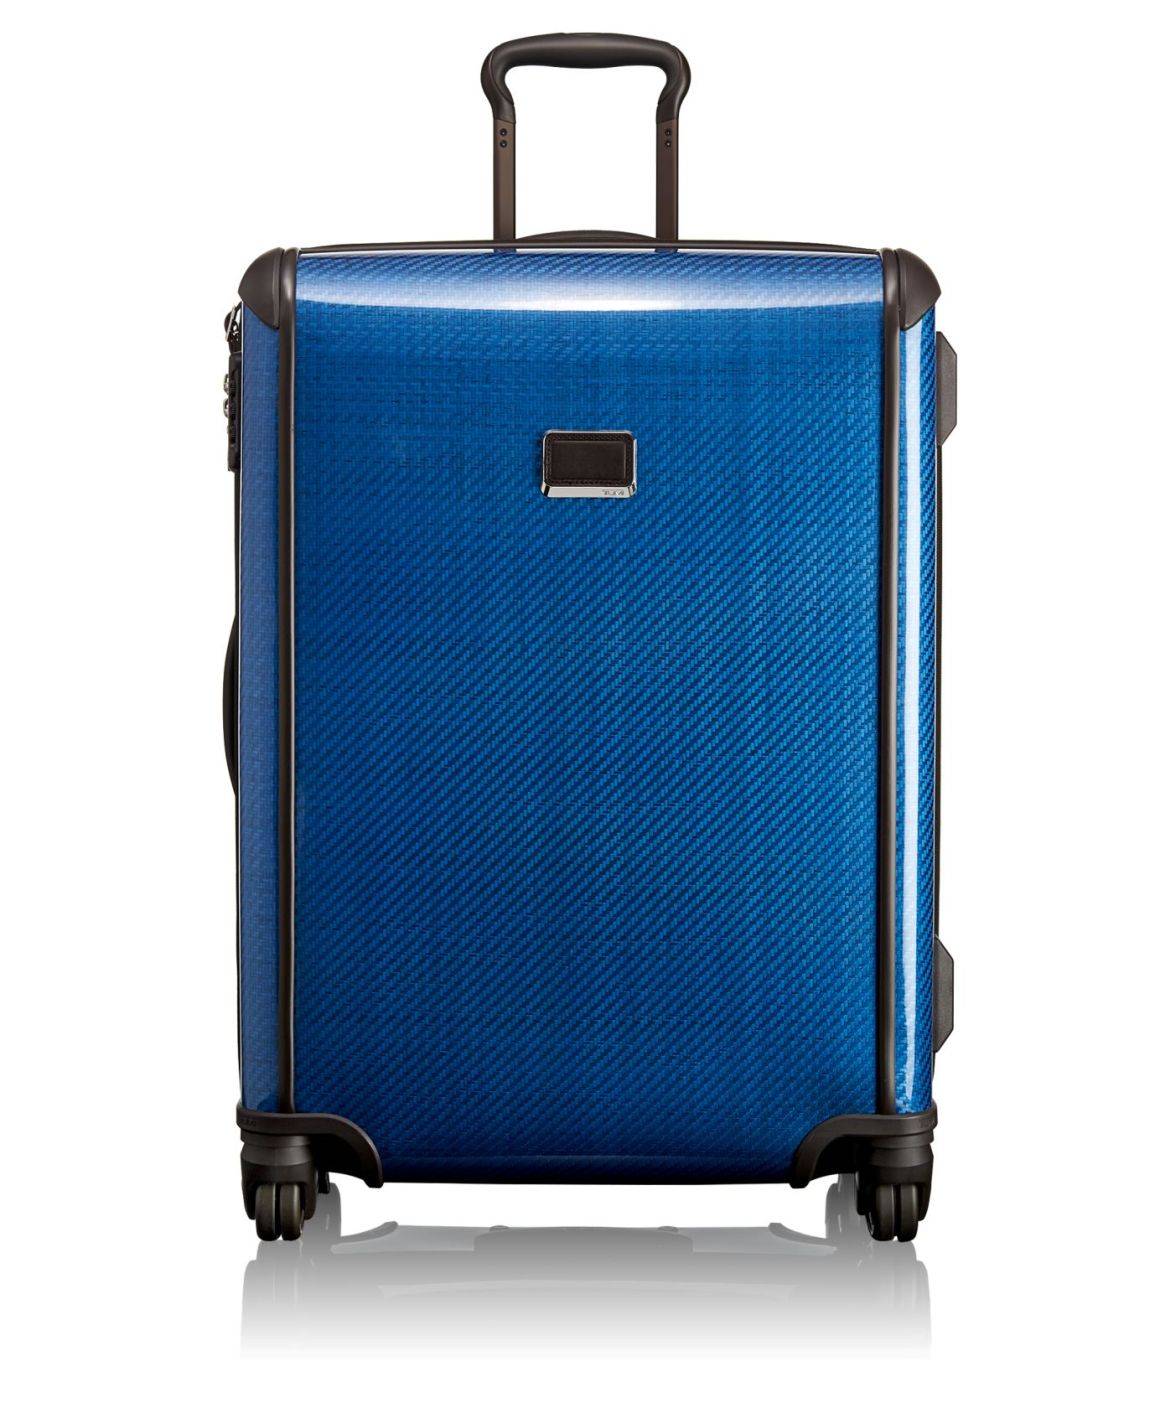 海水藍嘅Trip Packing Case（H54×W39×D20cm）比銀色或者黑色鮮色啲，喺行李帶上都易認啲。$7,590